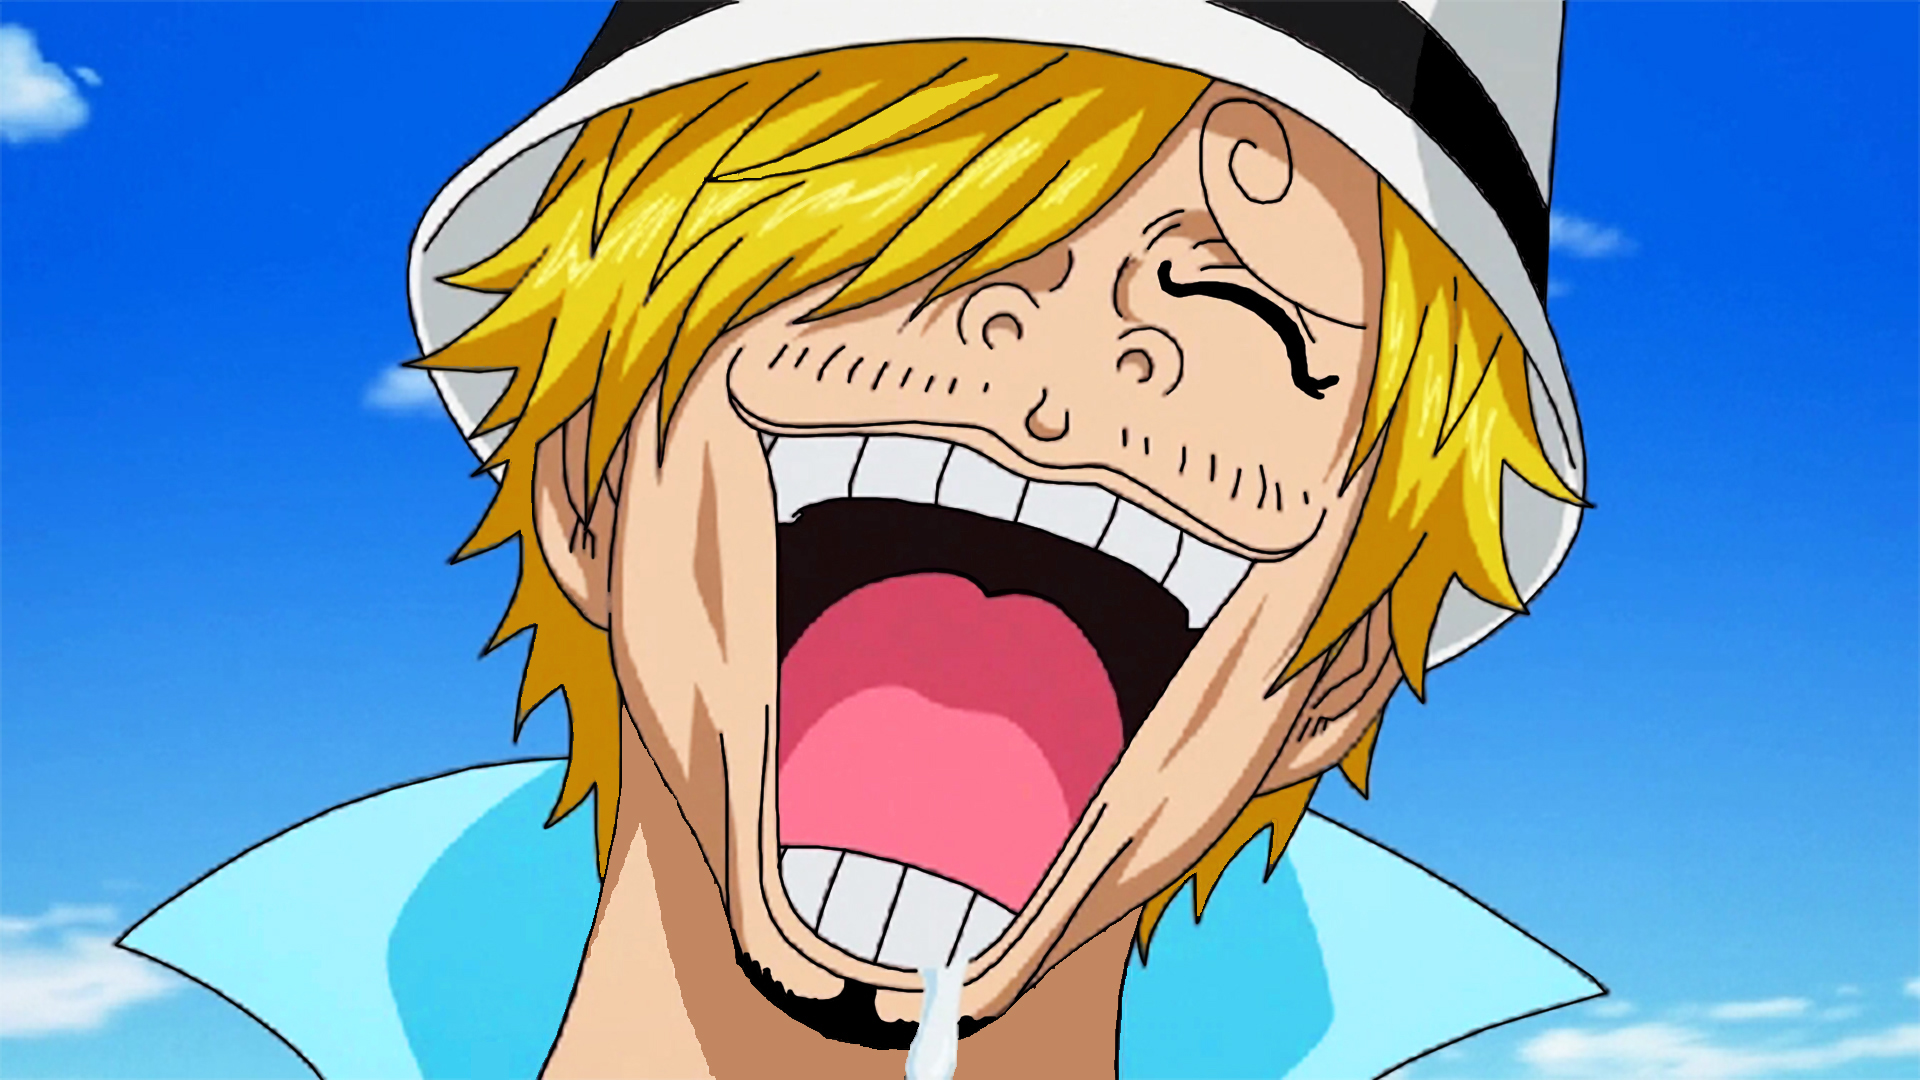 One Piece Film Gold: Episódio 0